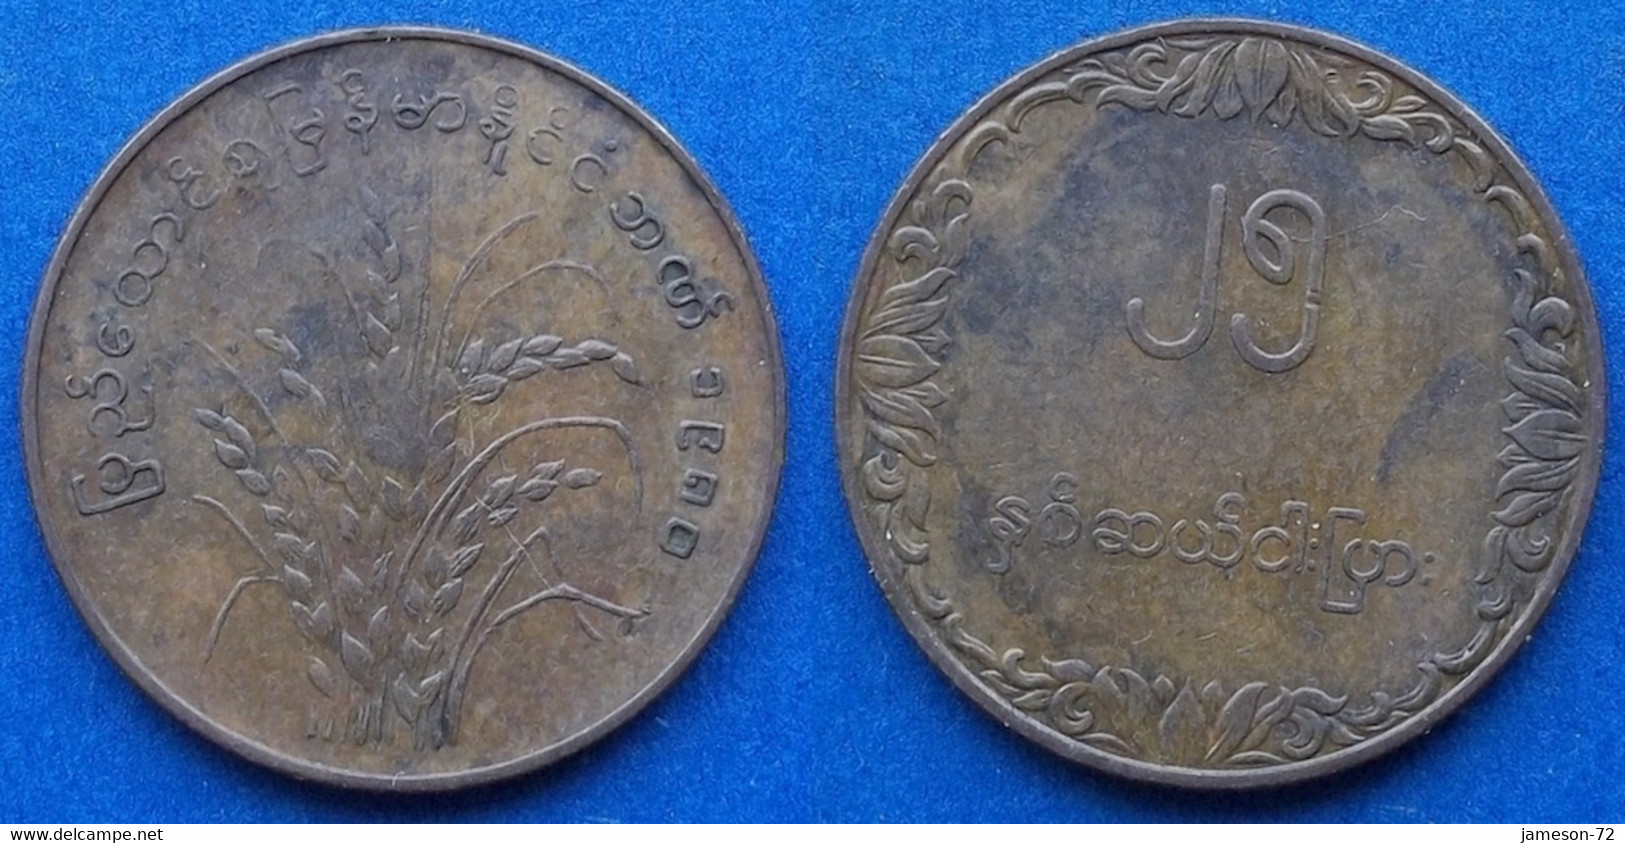 BURMA - 25 Pyas 1980 KM# 48 Republic (1948-1989) - Edelweiss Coins - Birmania